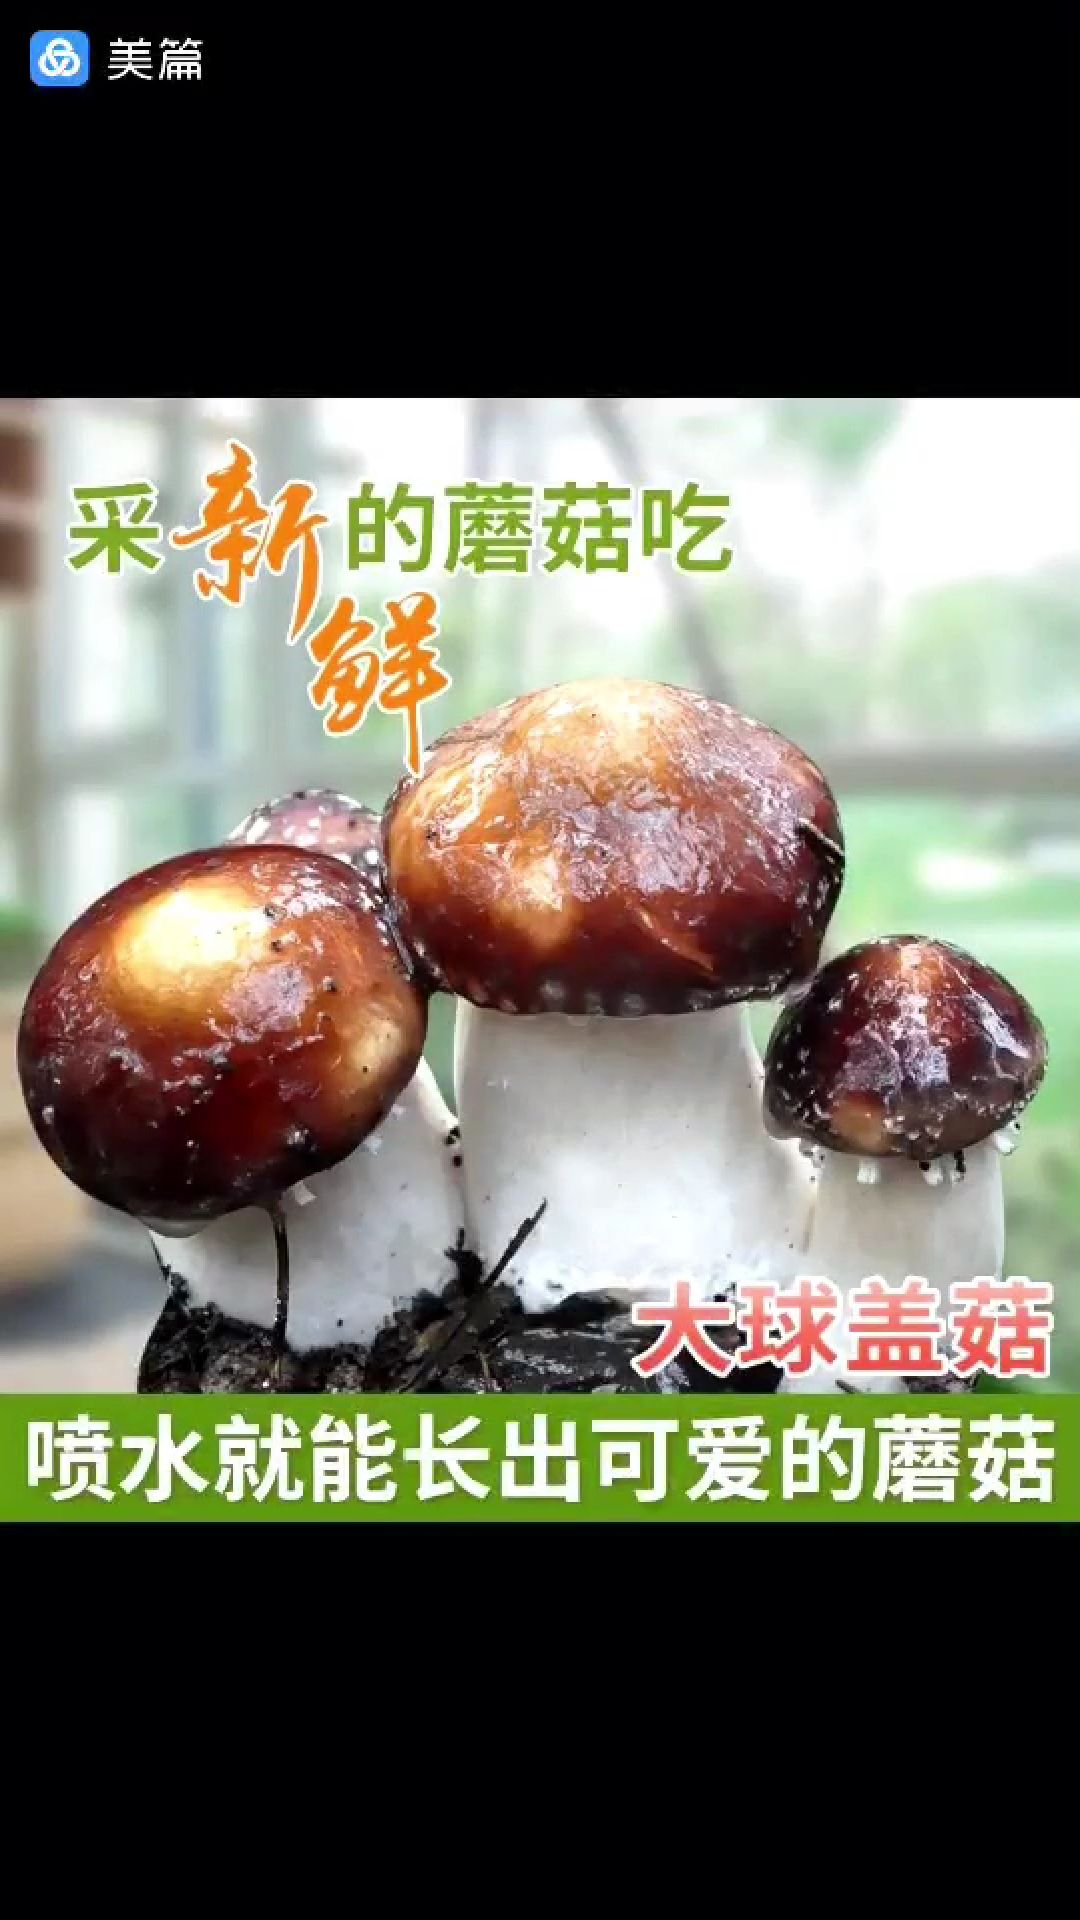 蘑菇 大球盖菇,菜中之王,营养价值非常高 ,鲜货销售中,量大优惠